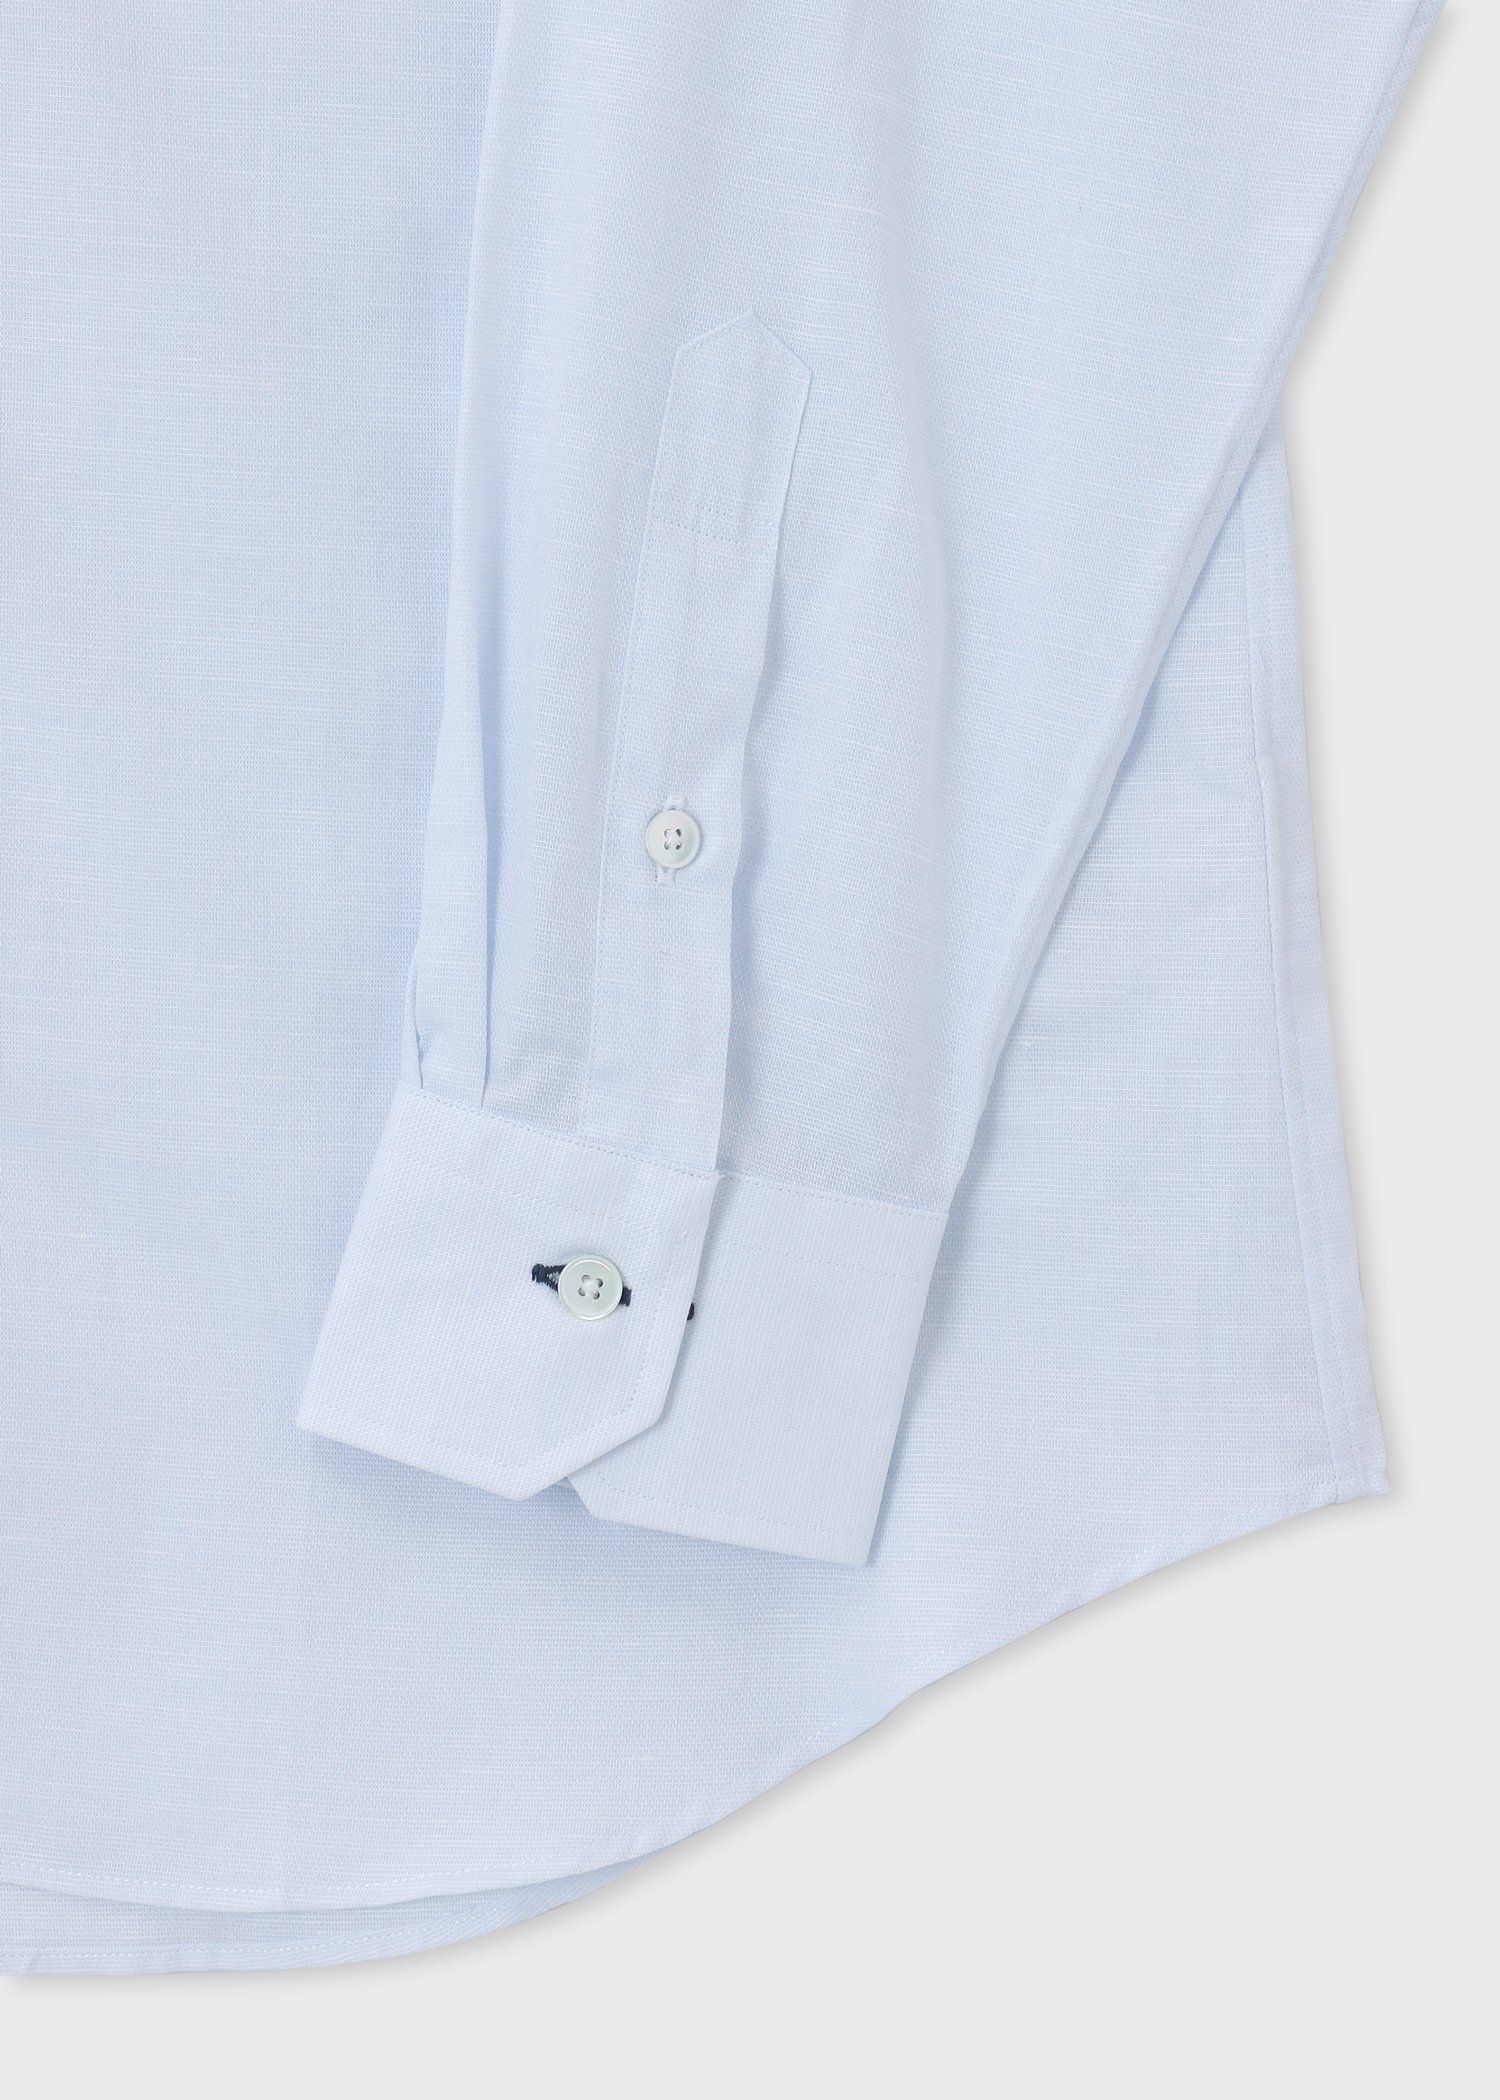 ポールスミス 金ボタン ペイズリー フローラル 刺繍 ドレスシャツ 日本製¥35200